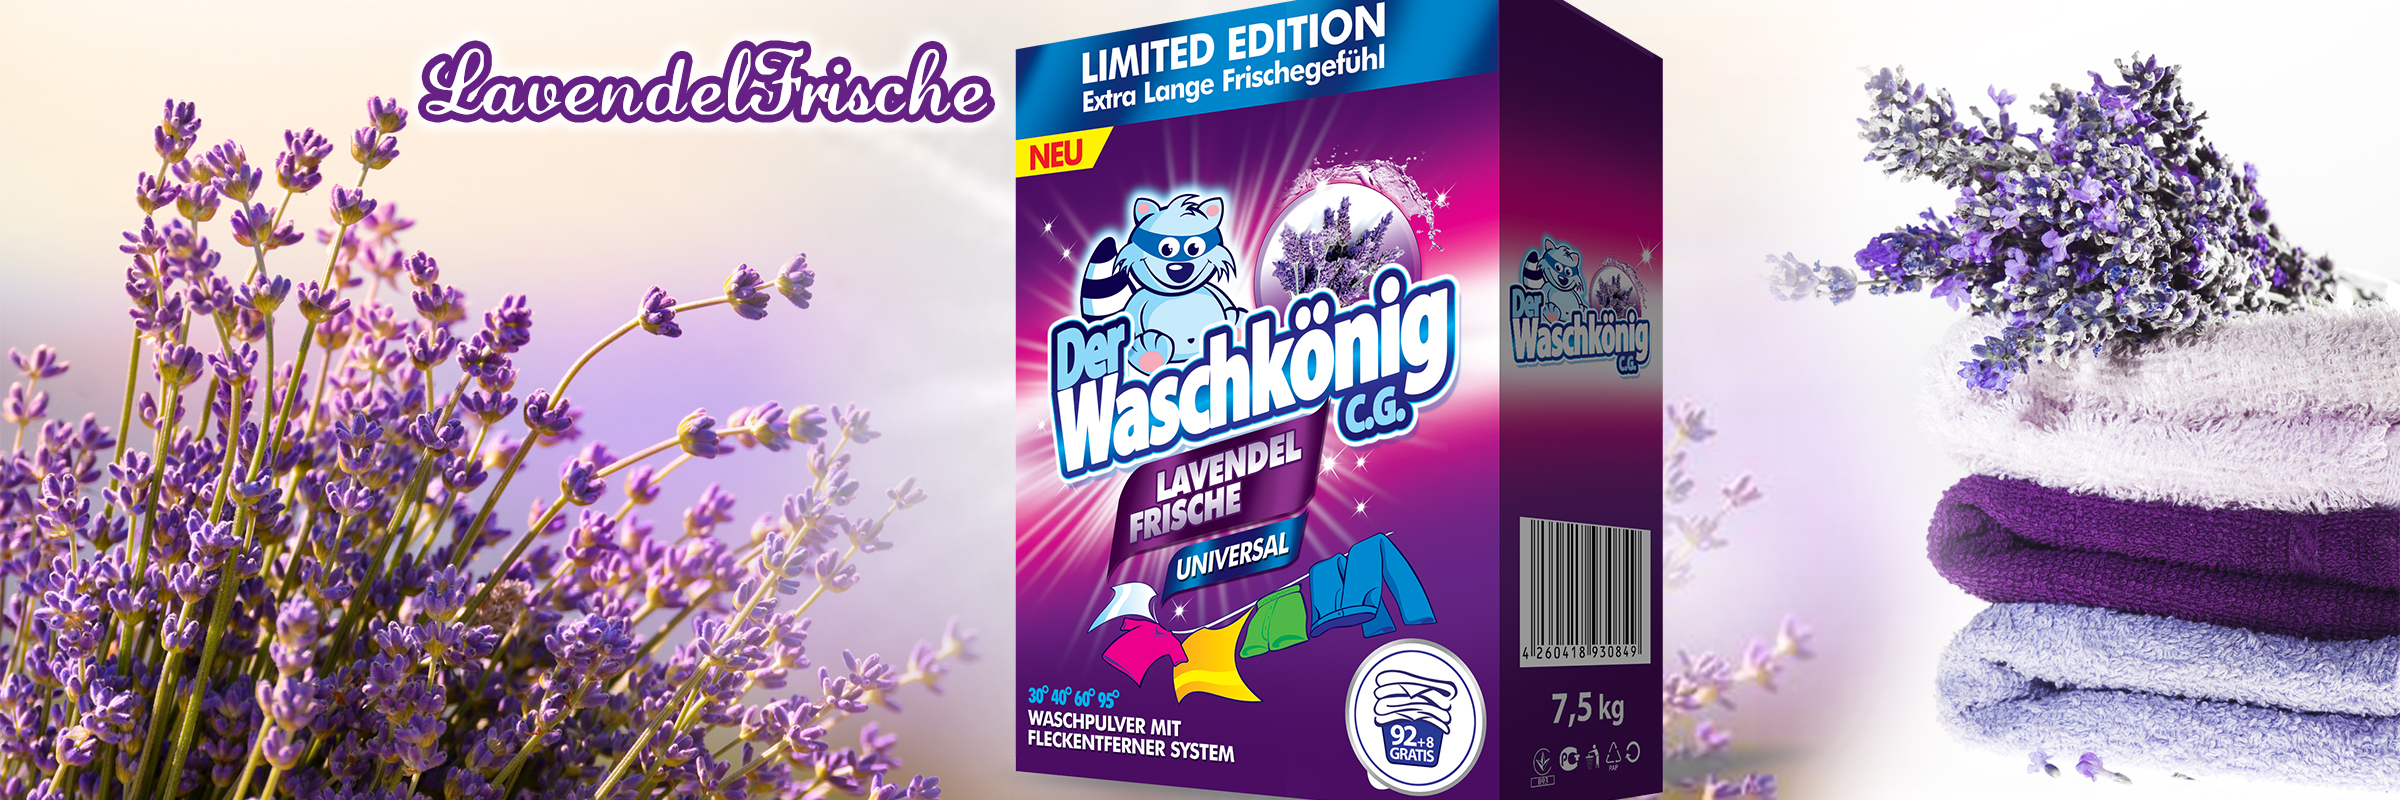 Washing powder Der Waschkönig Lavendel Frische Universal - Limited Edition